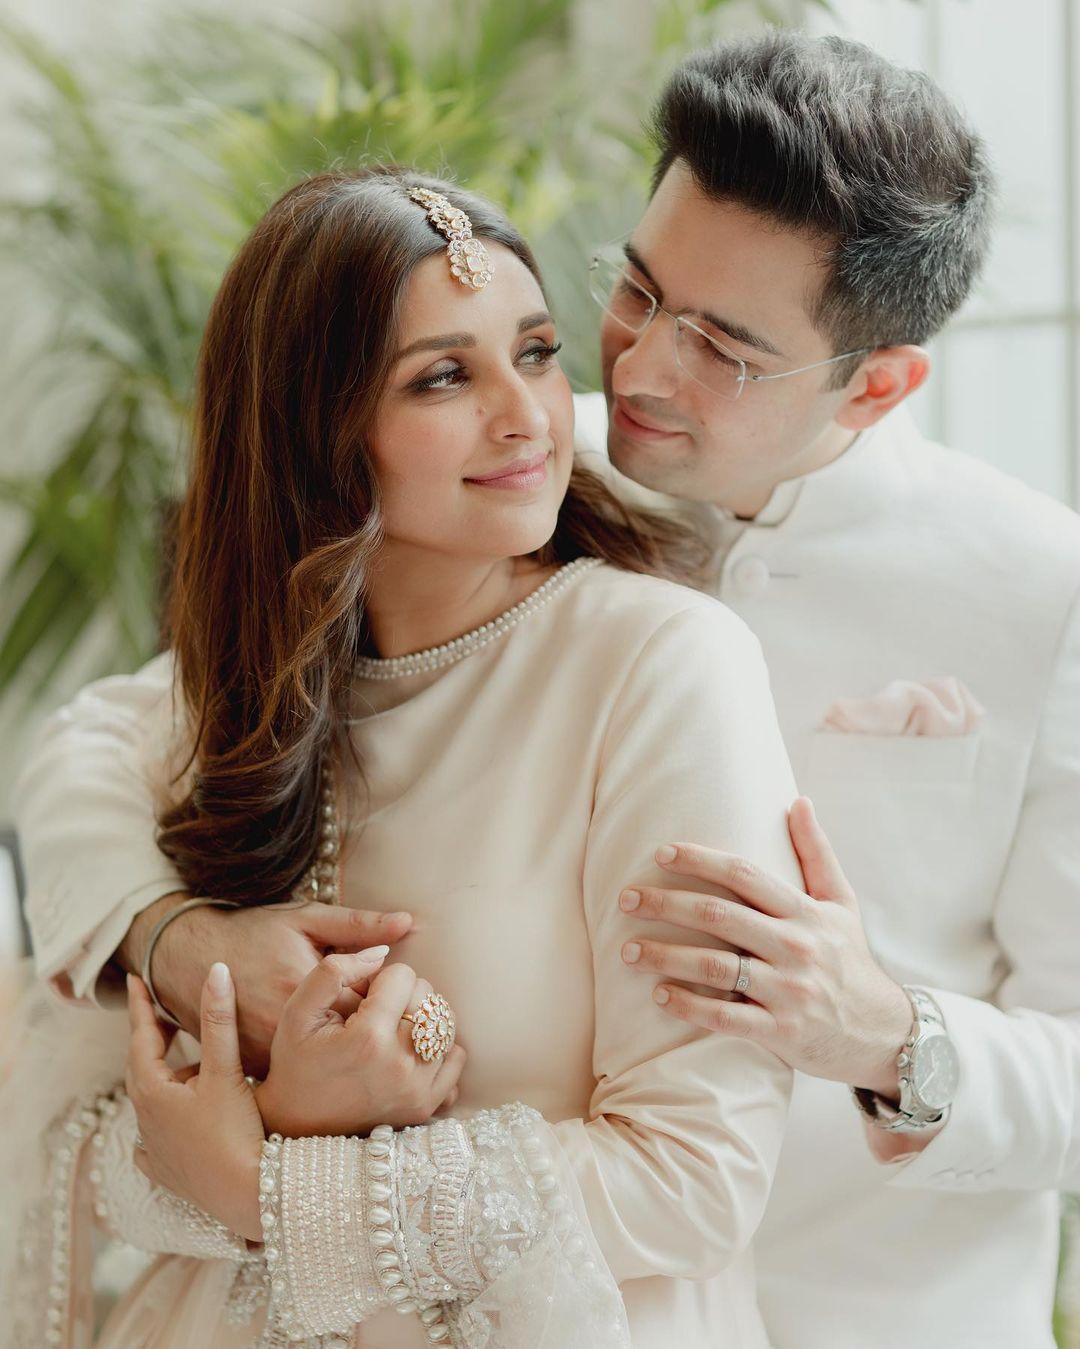 Raghav Chadha and Parineeti Chopra got engaged on May 13, 2023